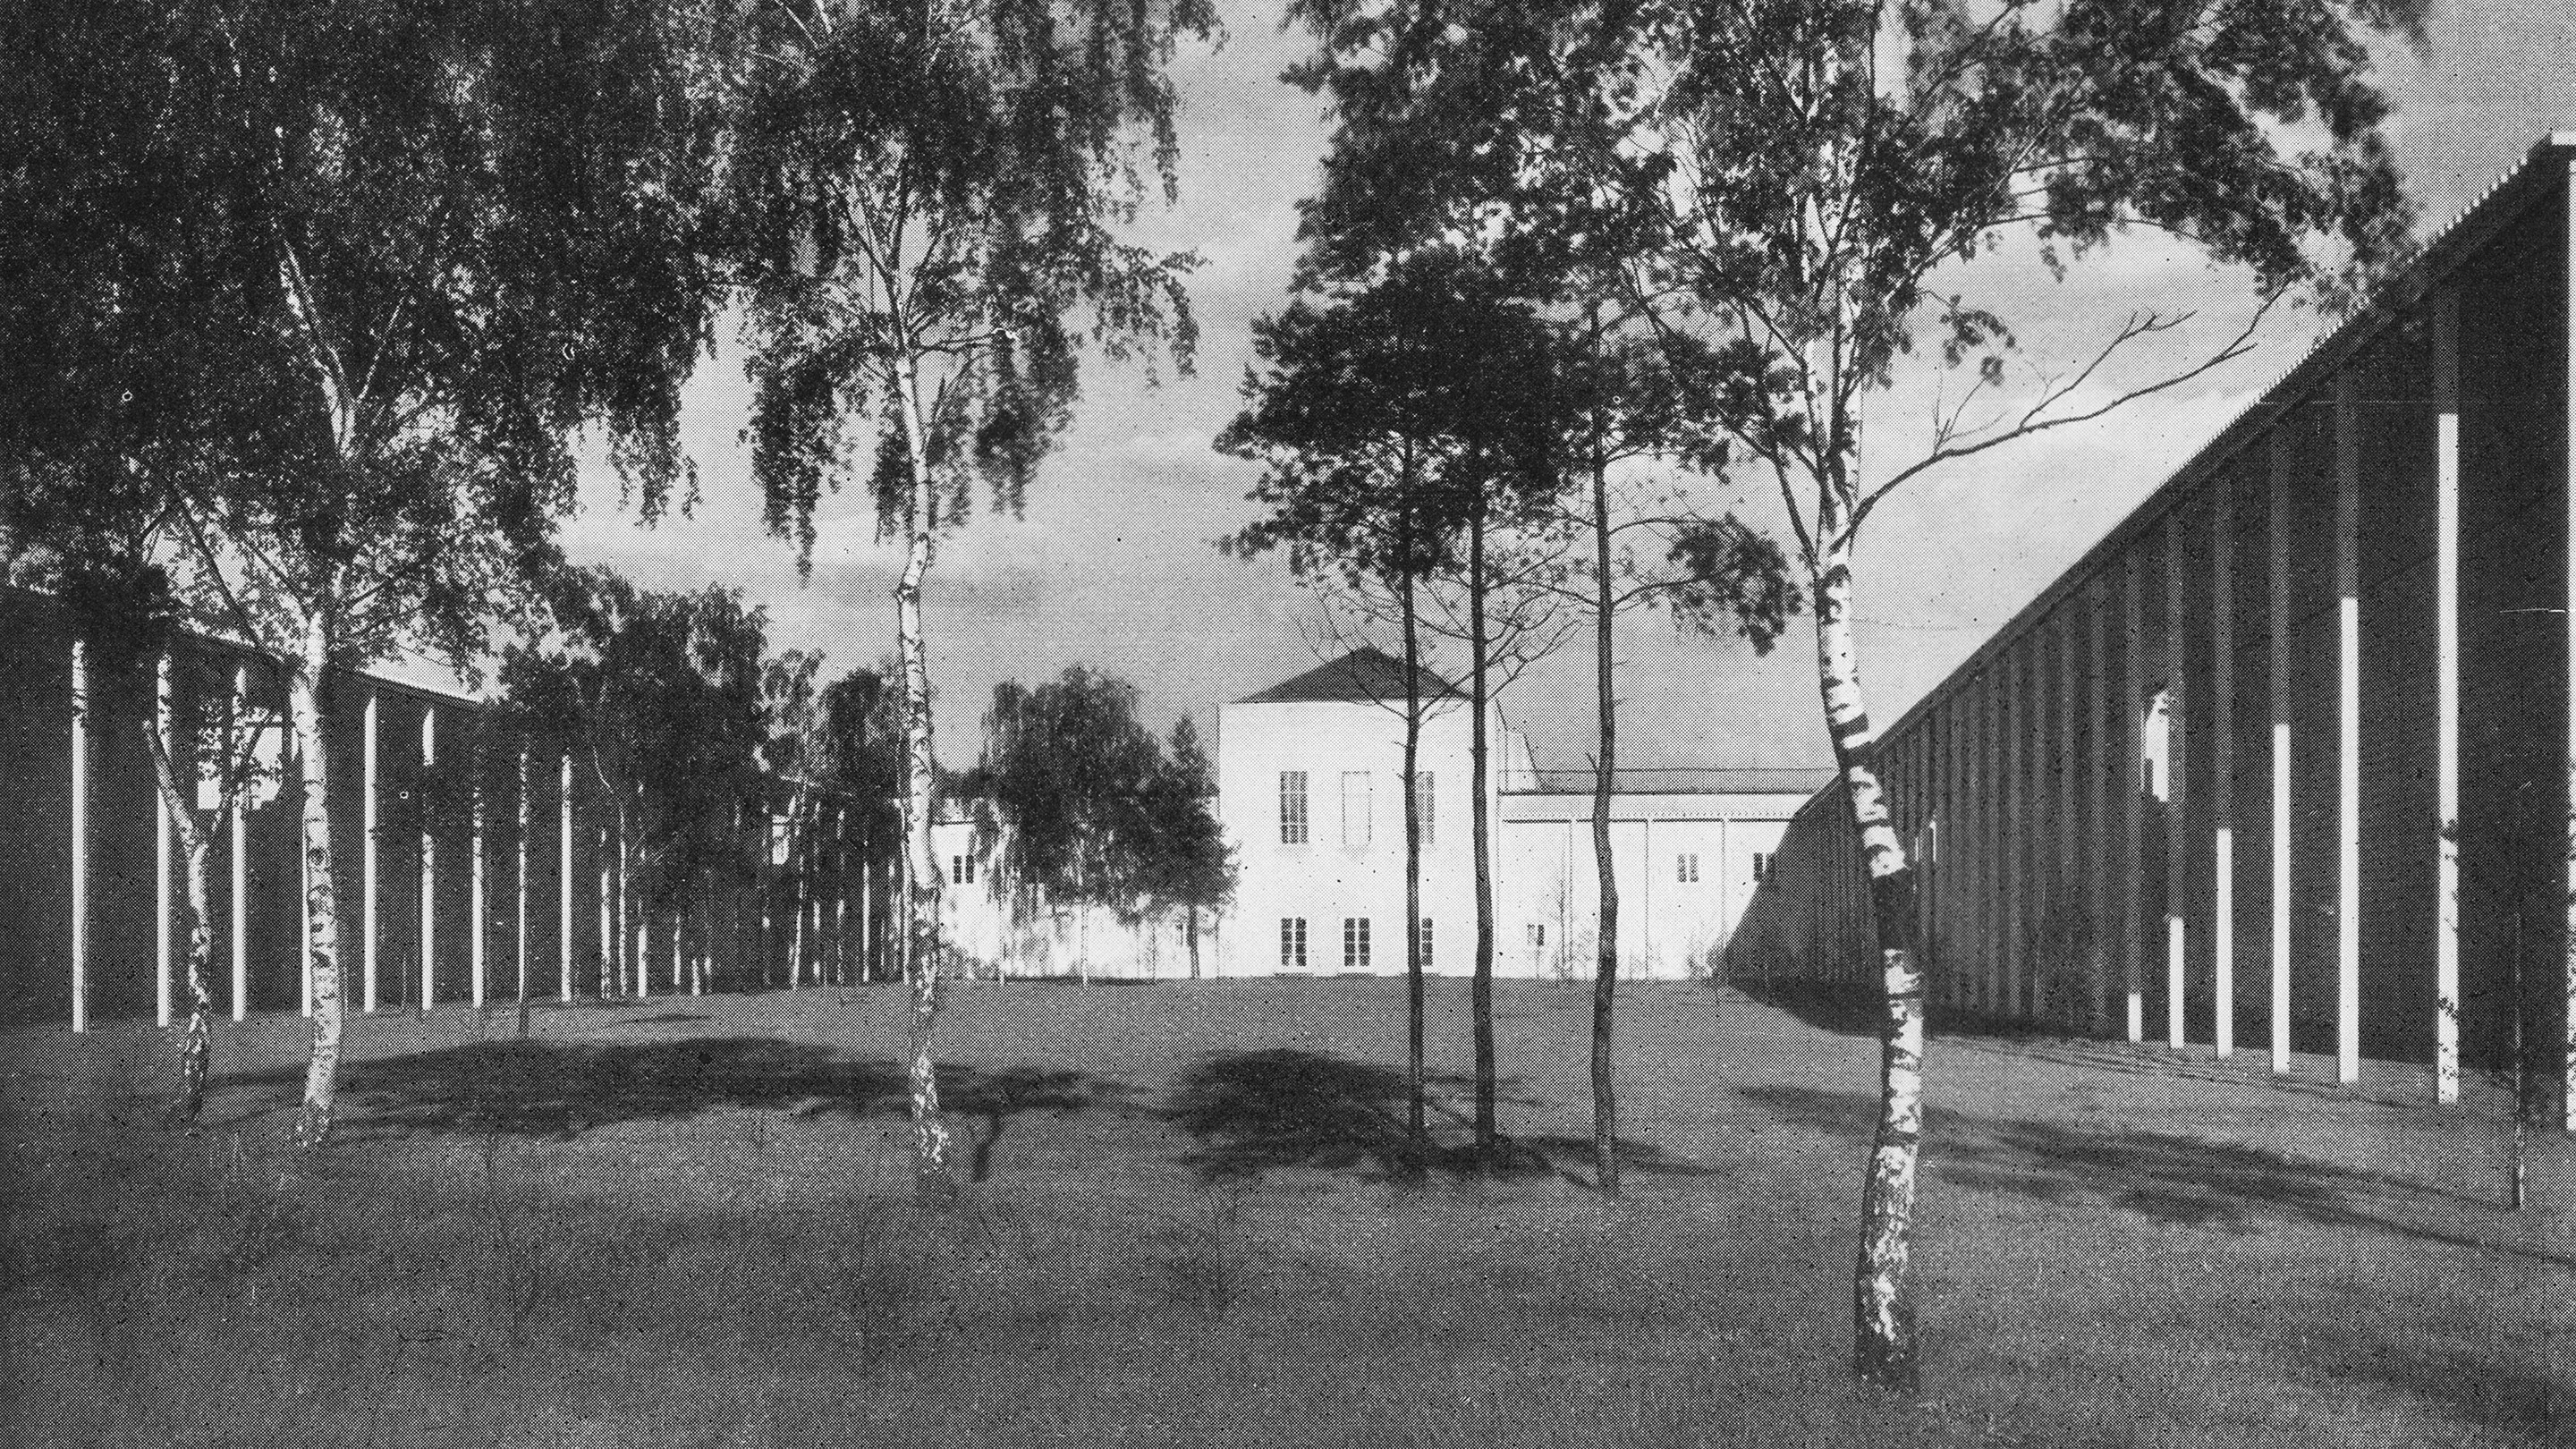 Heinrich Tessenow, State school near Klotzsche (Dresden), 1925-27.